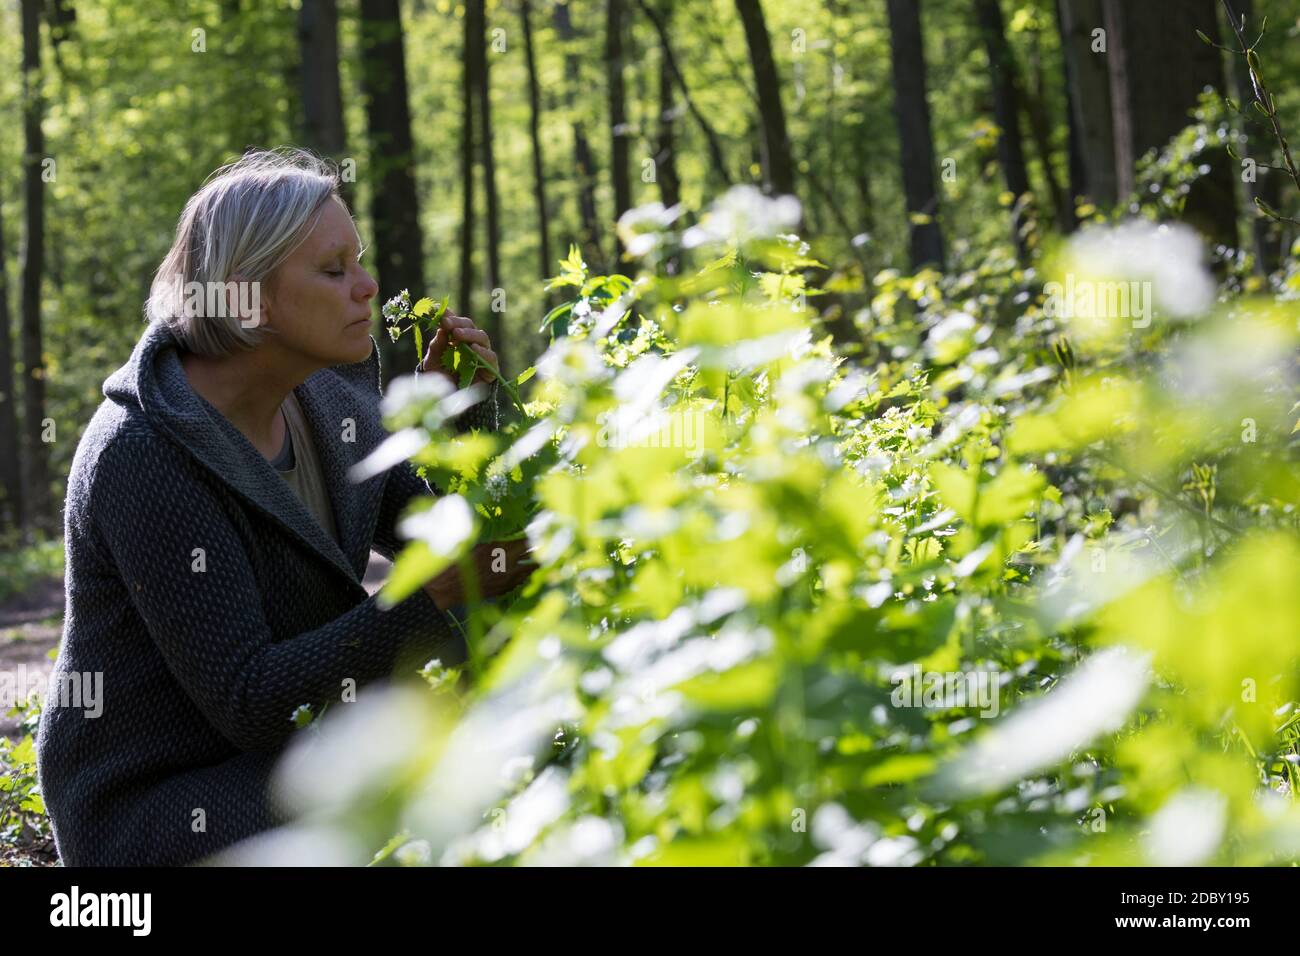 Knoblauchsrauke-Ernte, Kräuterernte, Frau in einem Bestand von Knoblauchsrauke in einem Wald, Kräuter sammeln, Knoblauchsrauke, Gewöhnliche Knoblauchs Foto Stock